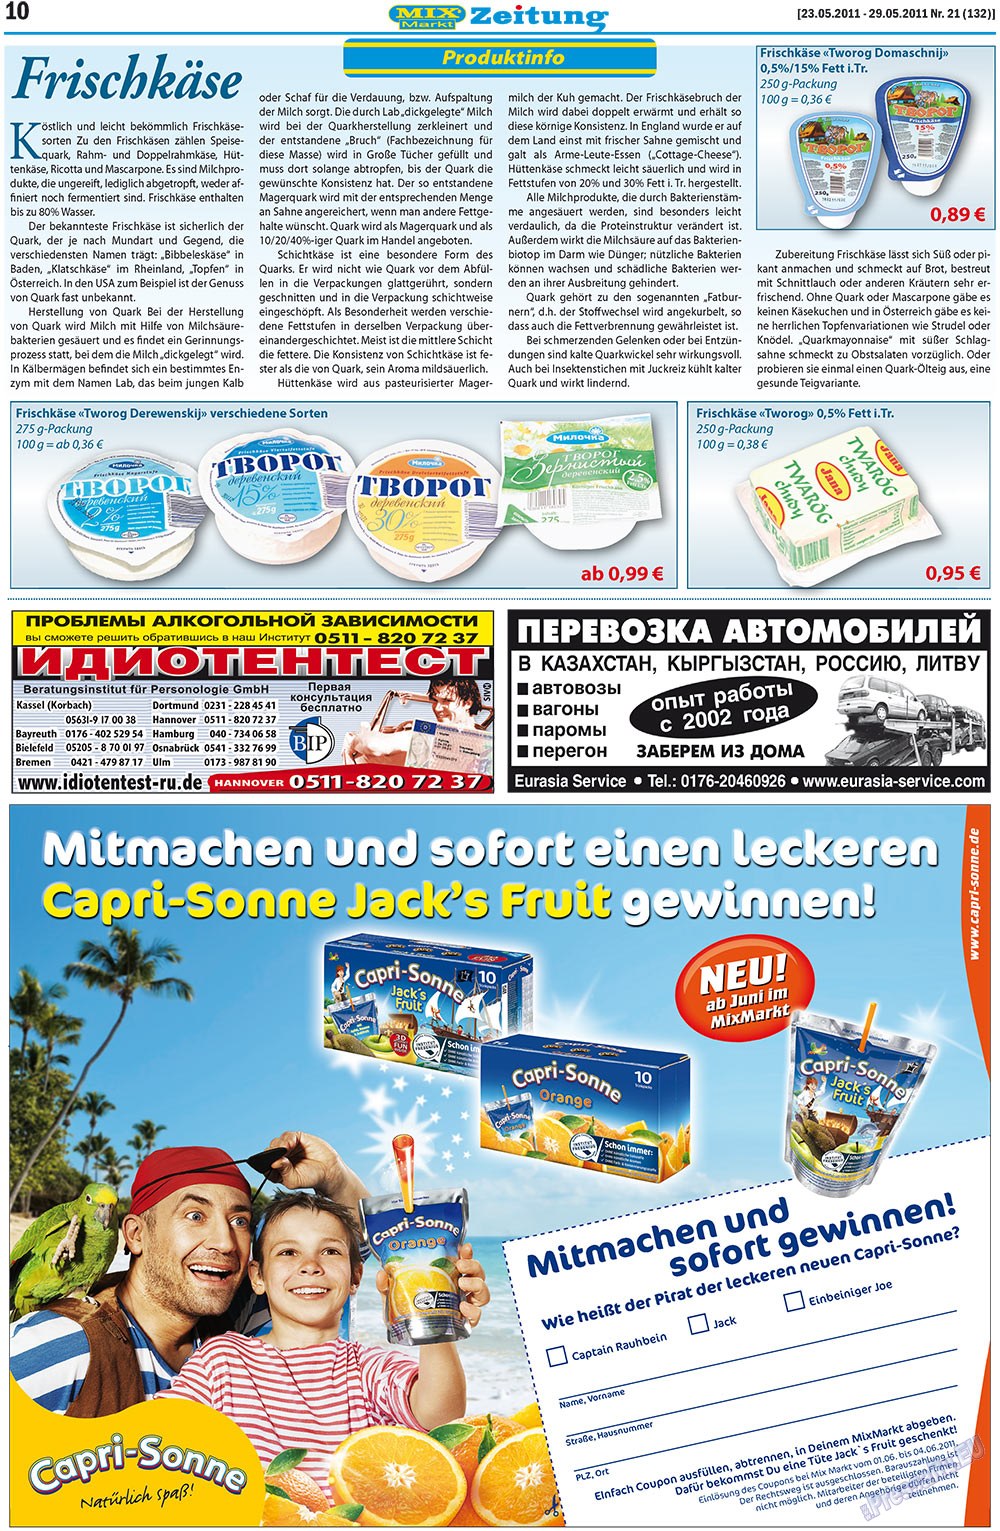 MIX-Markt Zeitung (газета). 2011 год, номер 21, стр. 10